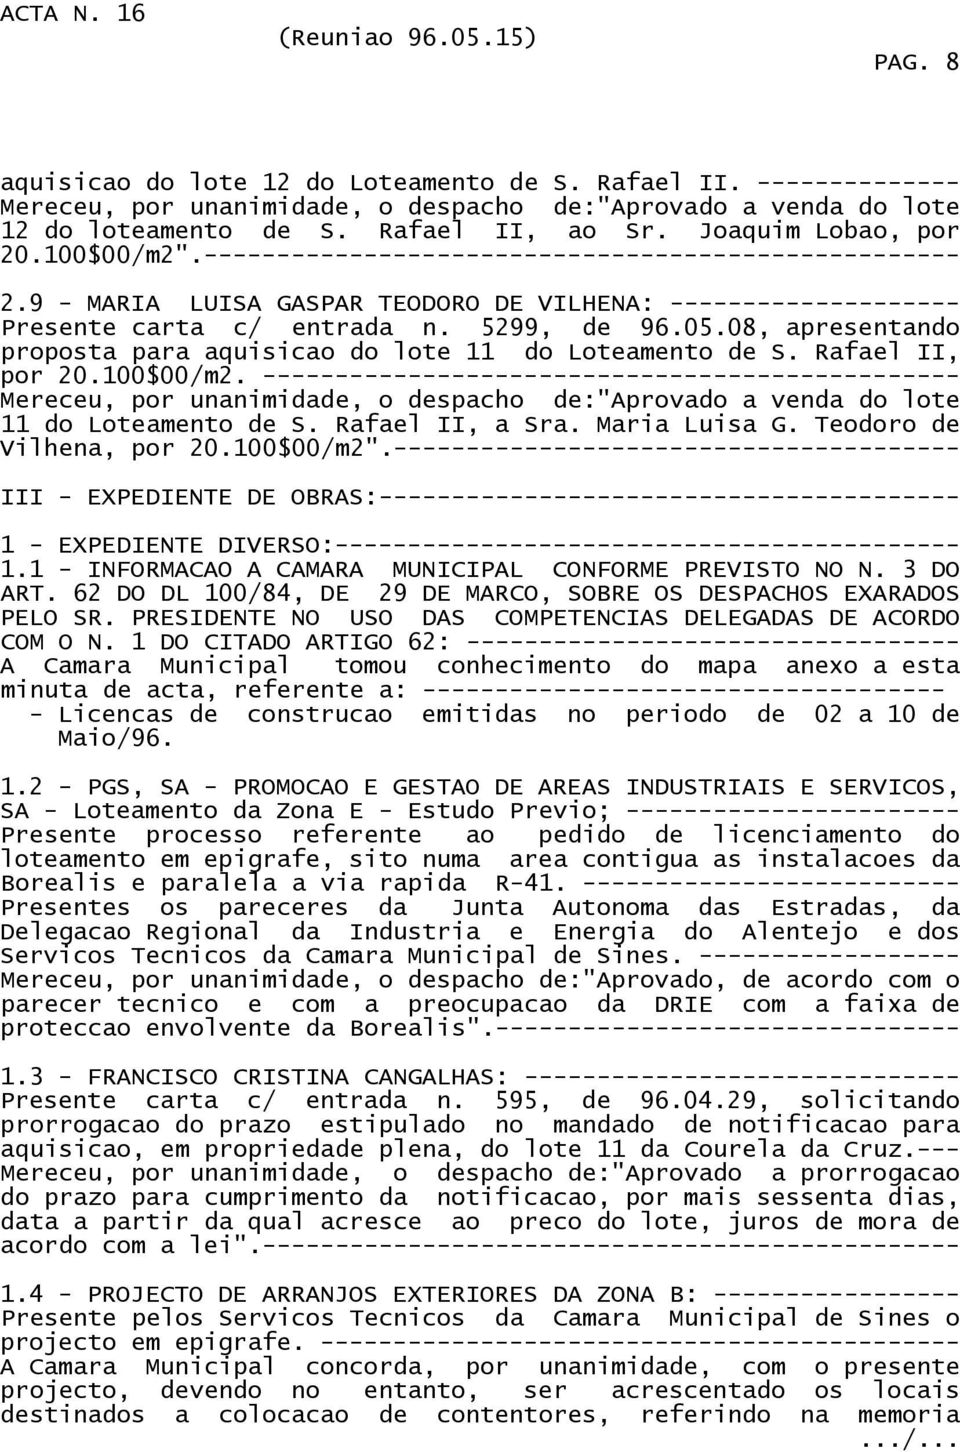 08, apresentando proposta para aquisicao do lote 11 do Loteamento de S. Rafael II, por 20.100$00/m2.